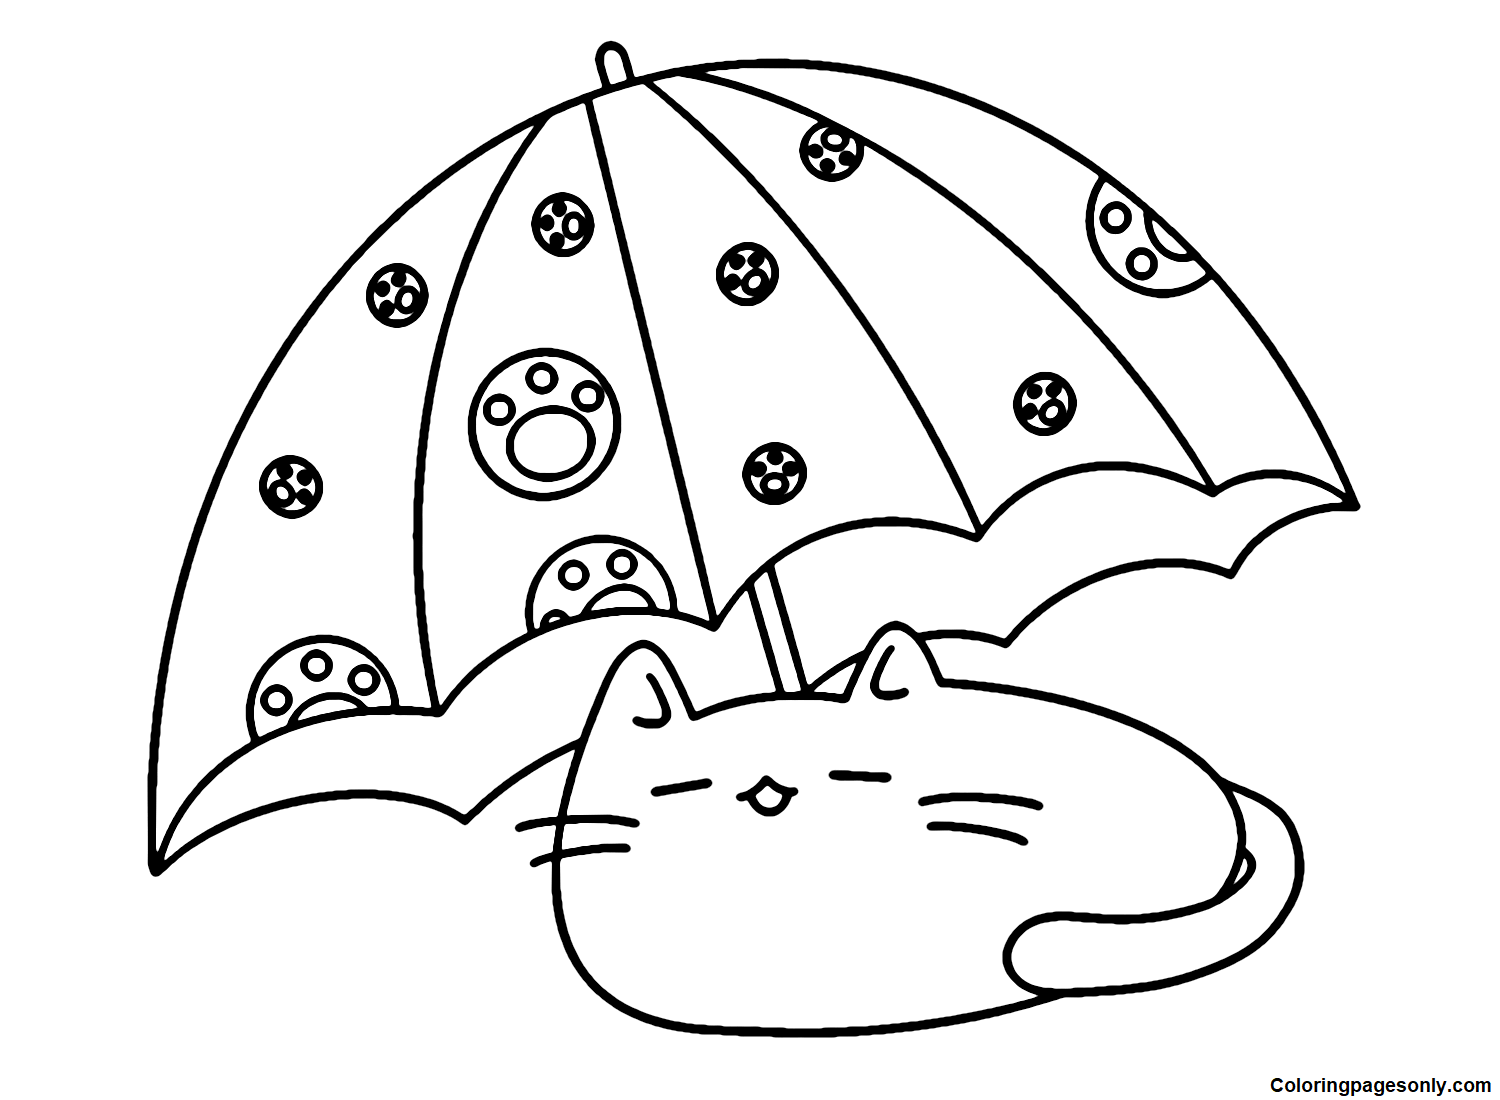 Милый кот и зонтик из мультфильма "Амбрелла"